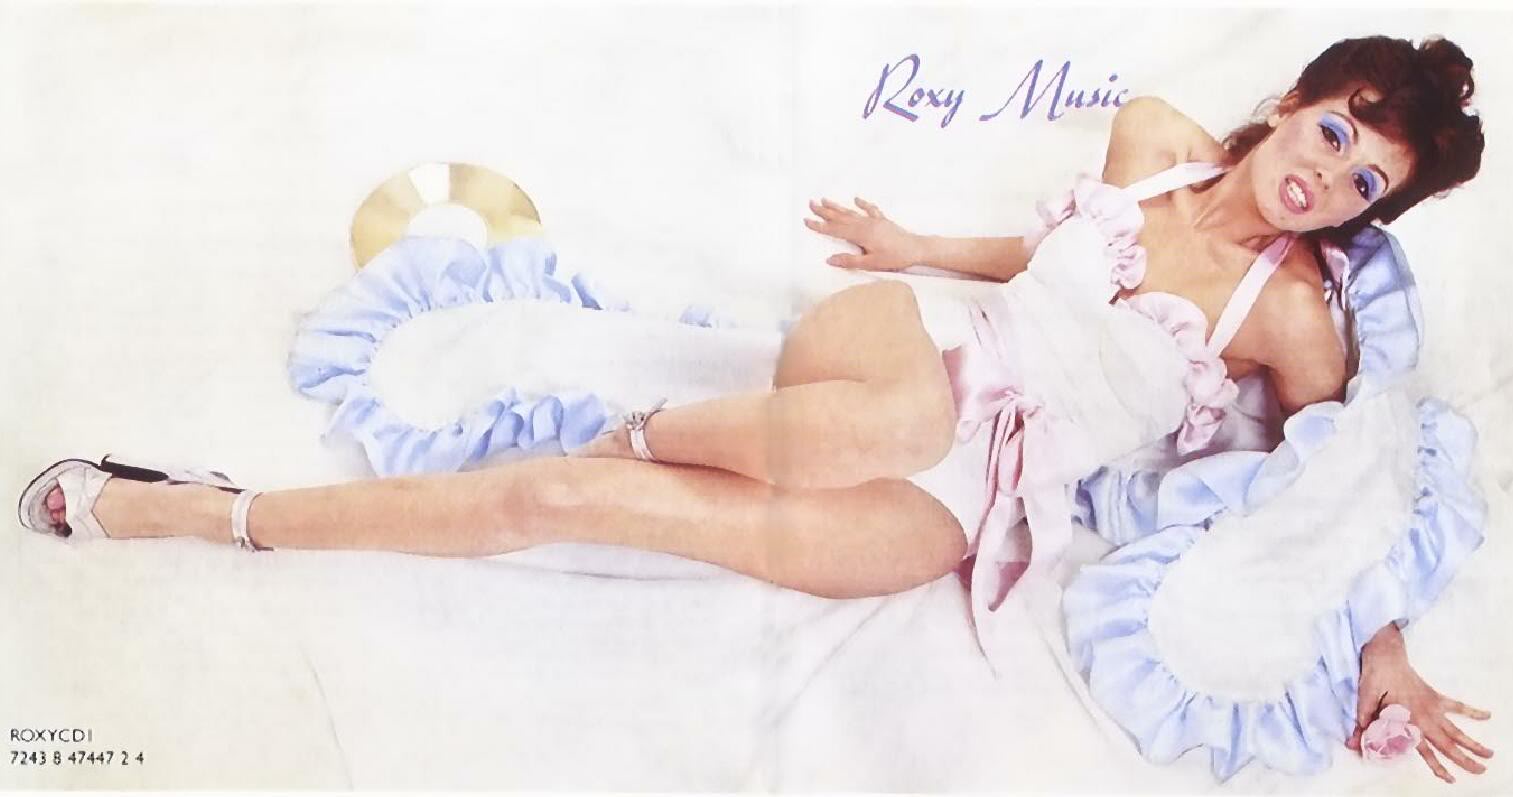 Albums del año que naciste Roxy+Music